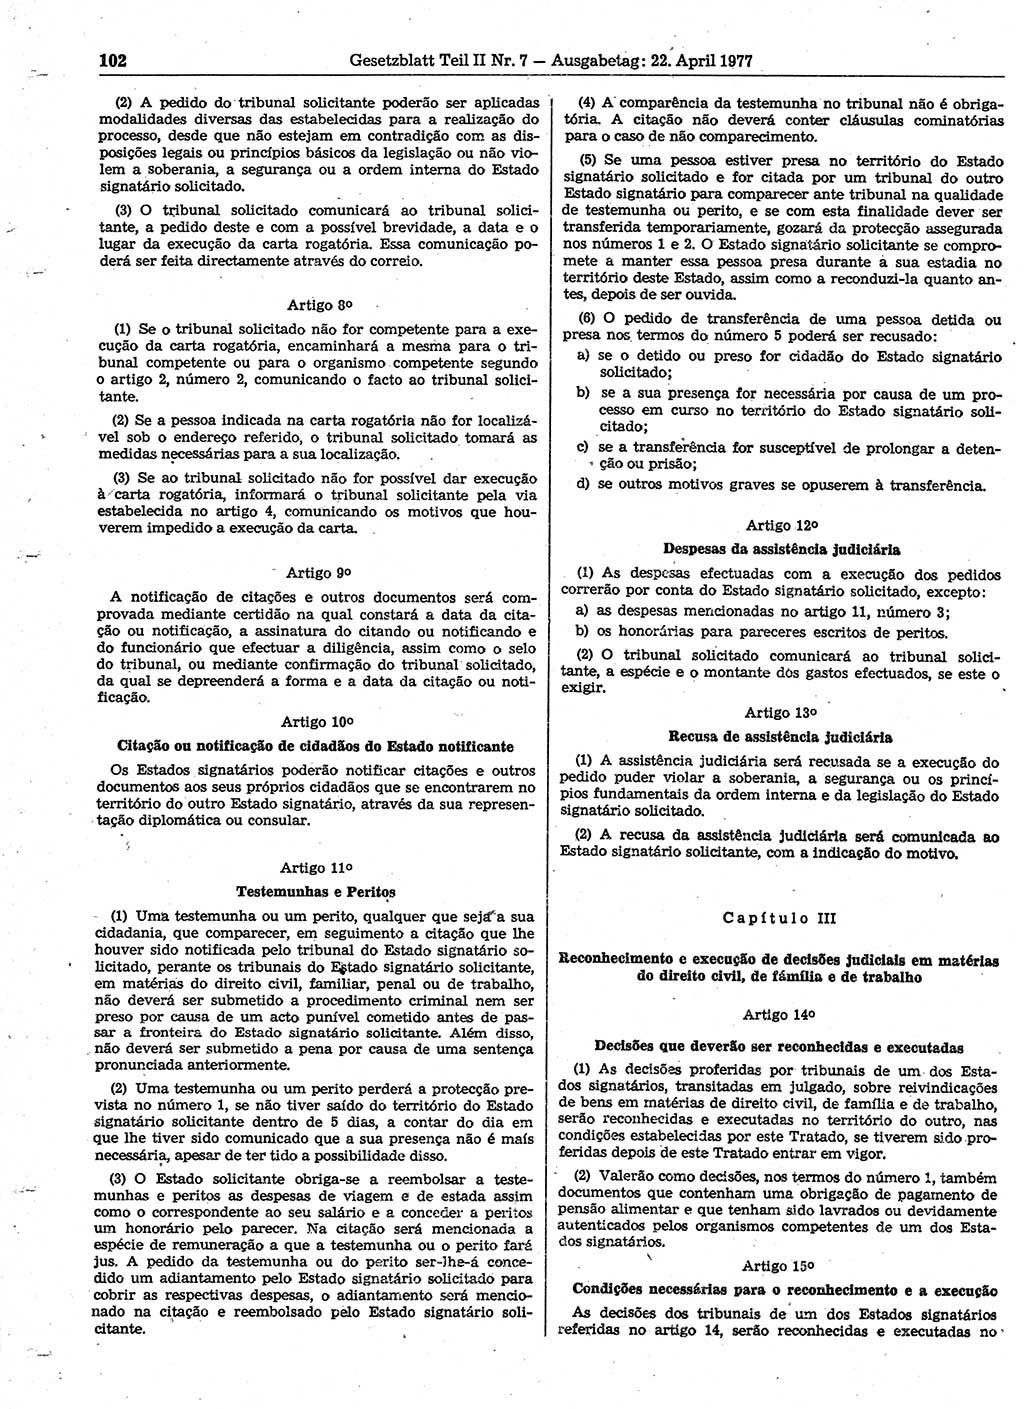 Gesetzblatt (GBl.) der Deutschen Demokratischen Republik (DDR) Teil ⅠⅠ 1977, Seite 102 (GBl. DDR ⅠⅠ 1977, S. 102)